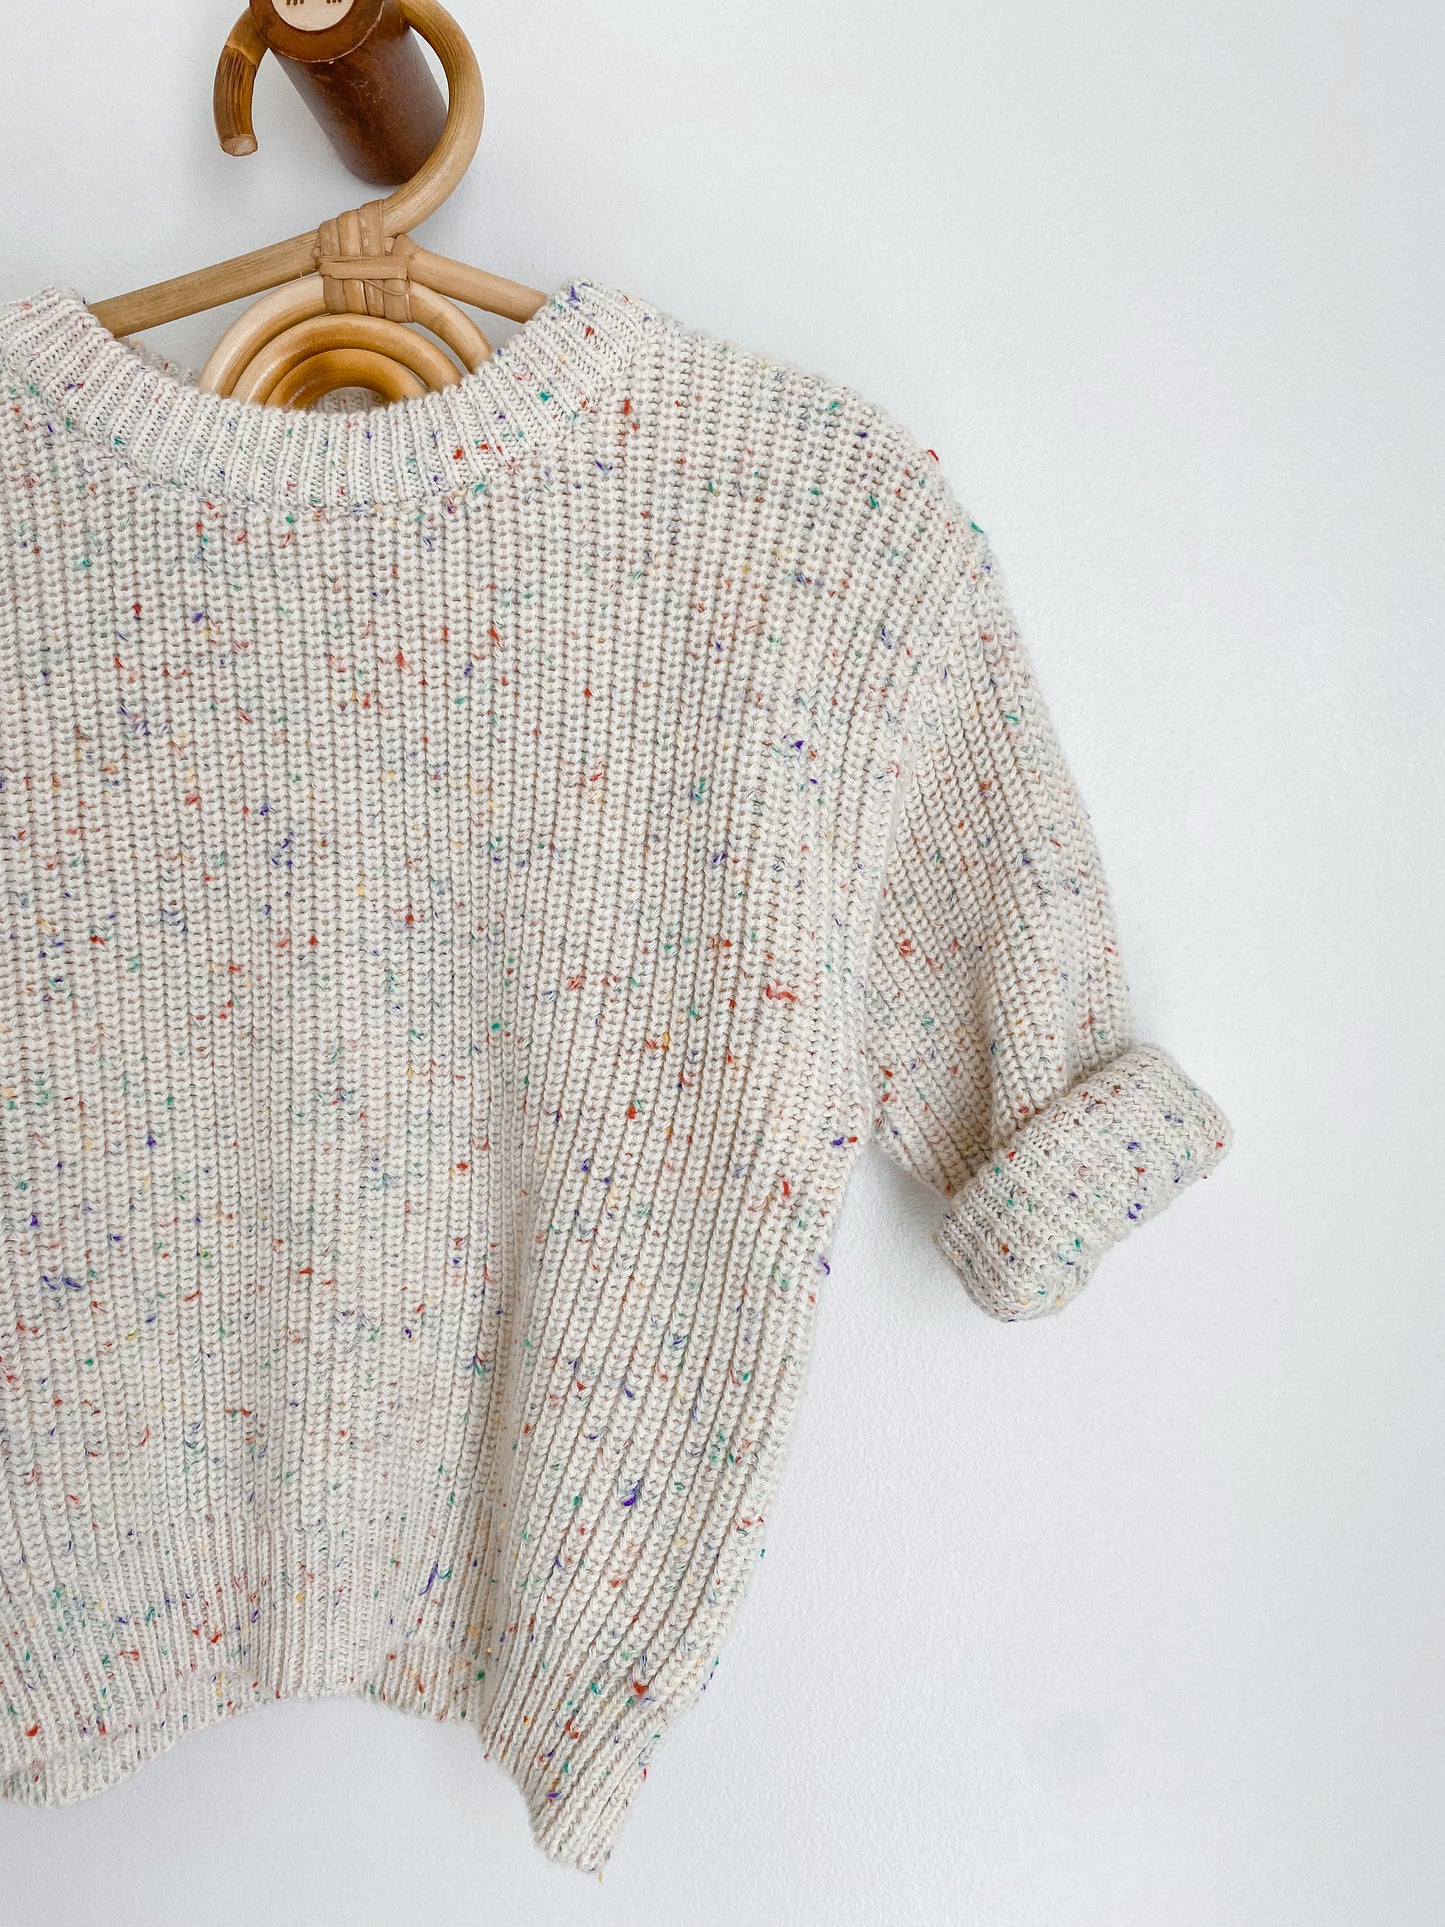 Custom Sweater Rainbow Sprinkle